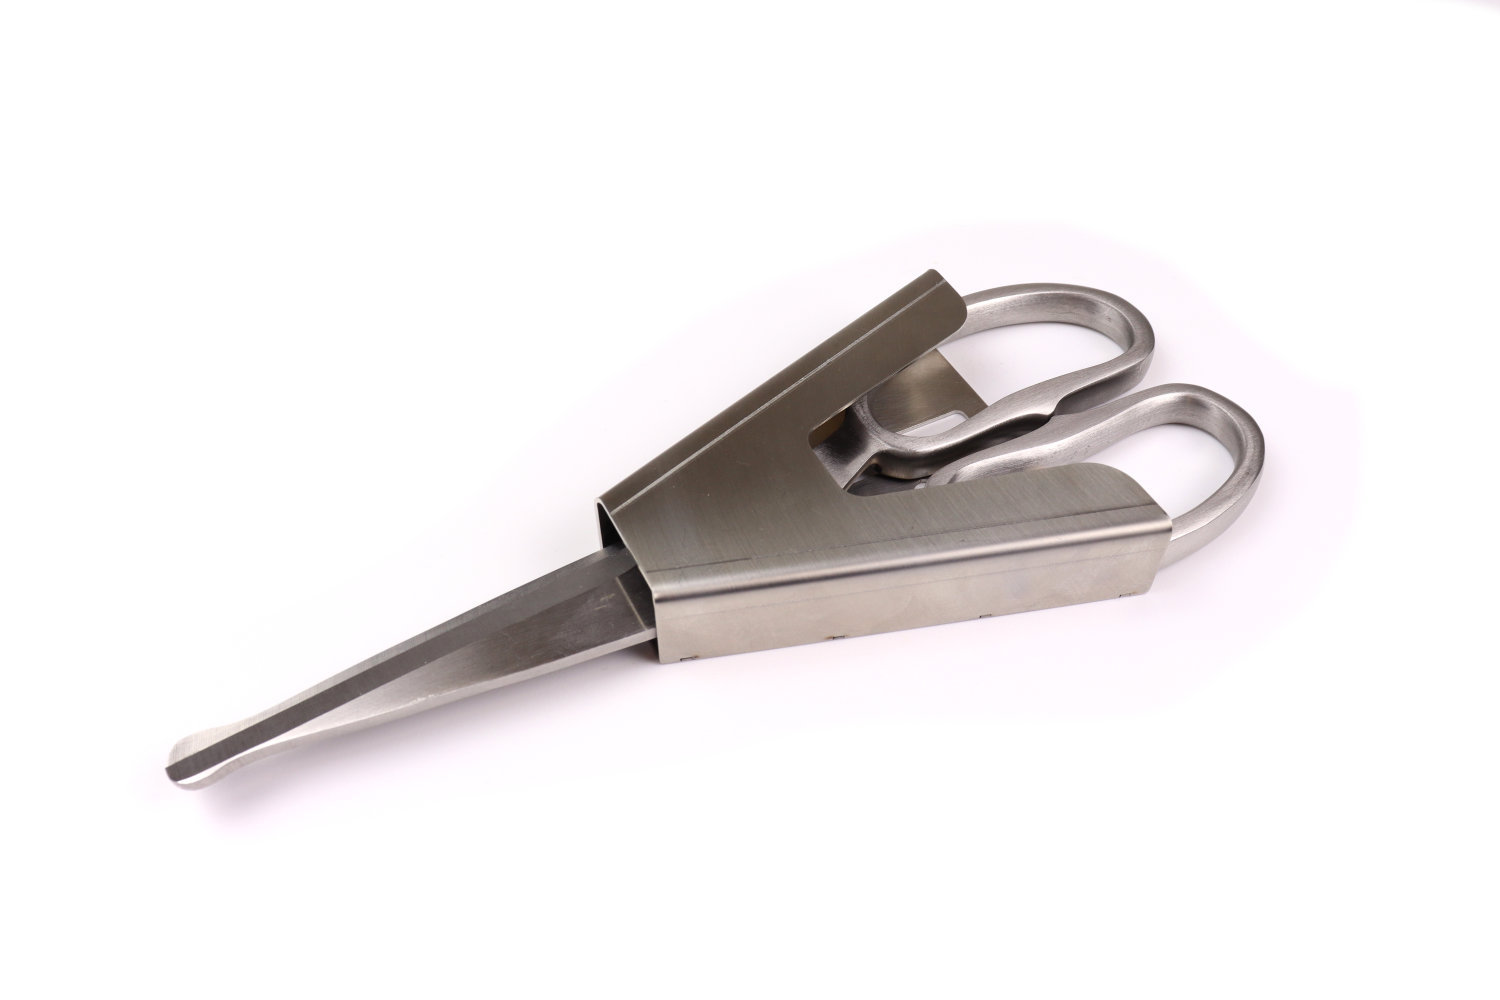 Stainless steel holster for scissors belt